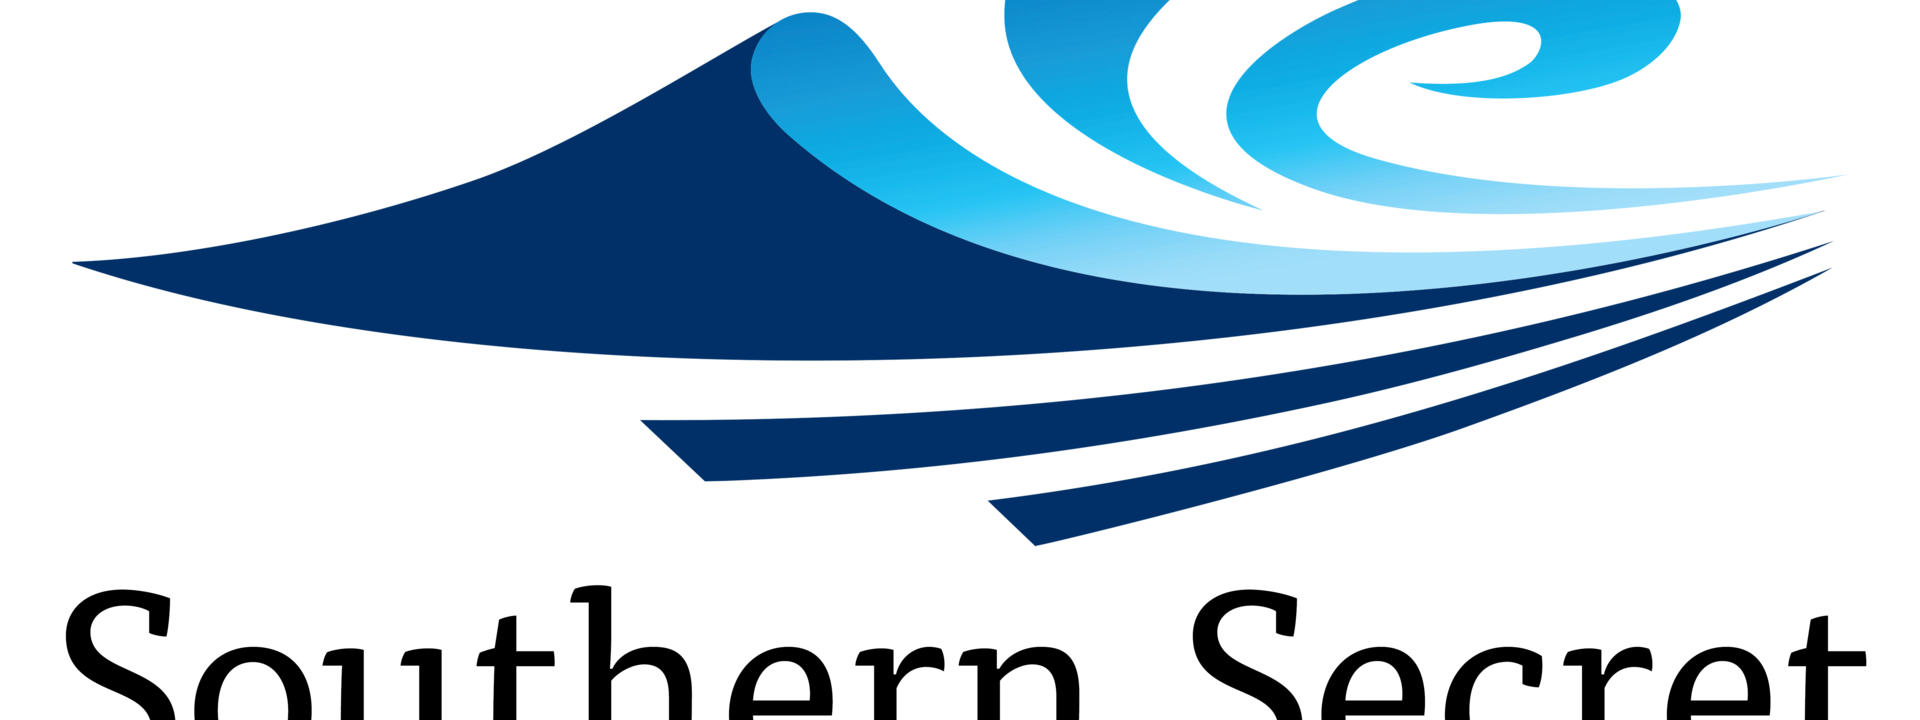 fiordland-cruises-logo.jpg